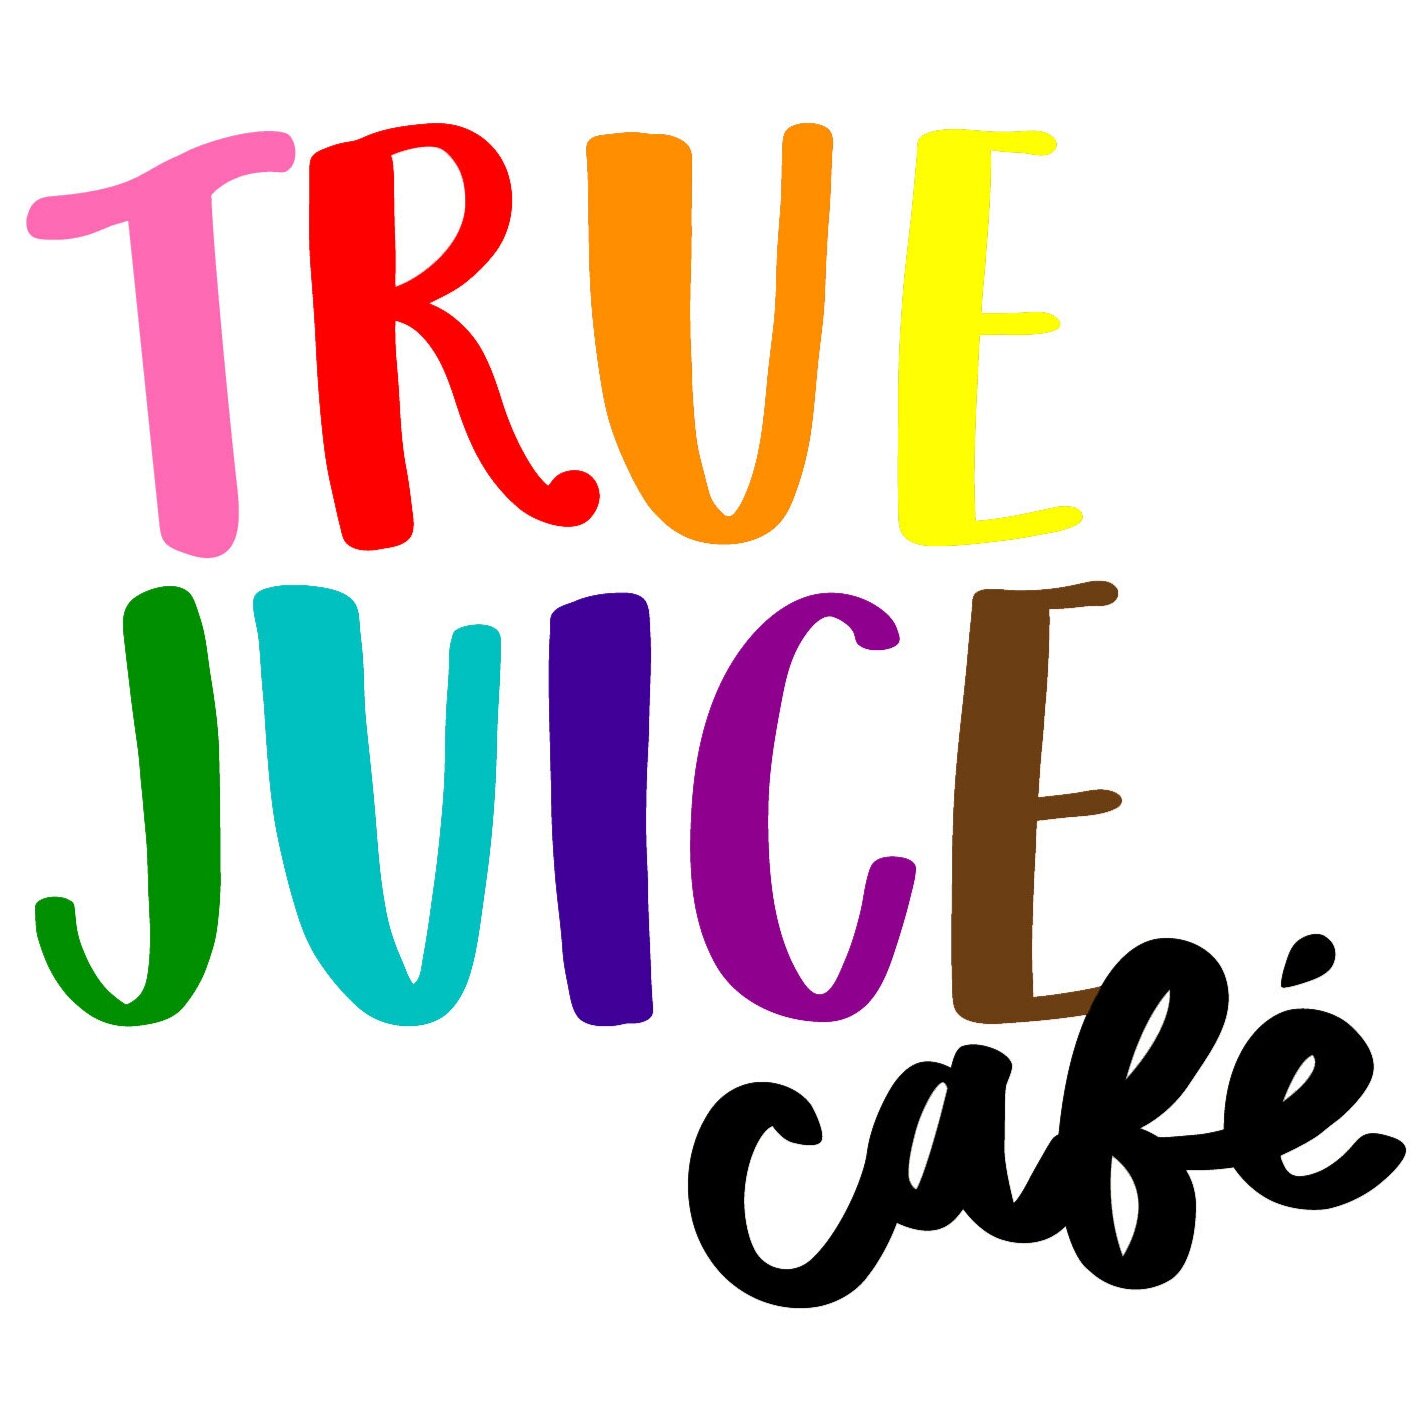 True Juice Cafe